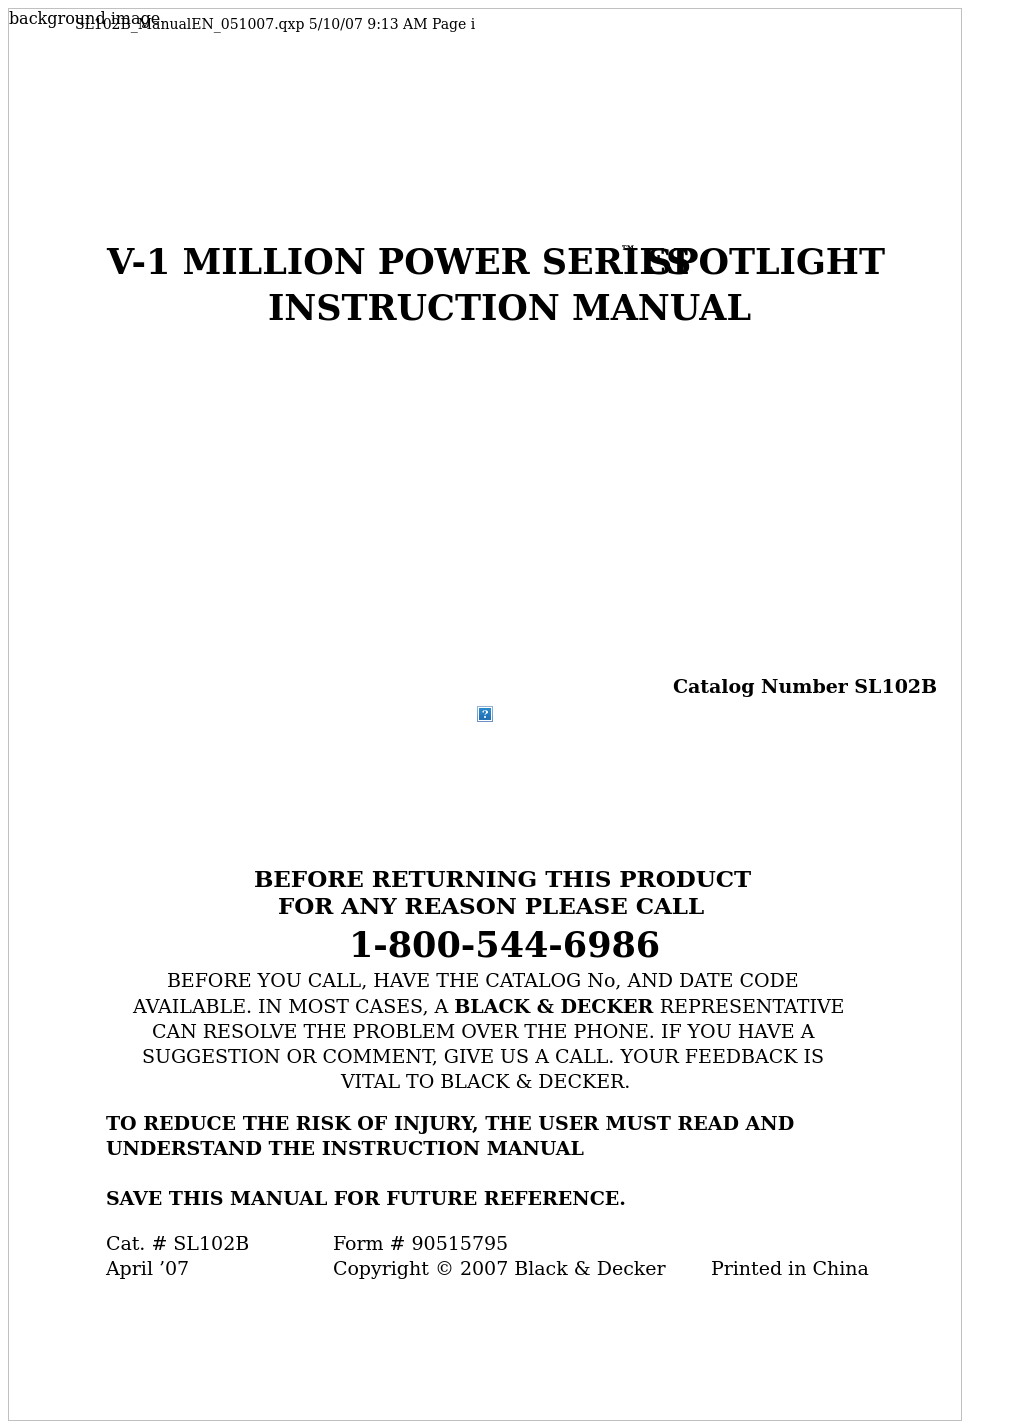 Power Series V-1 Million